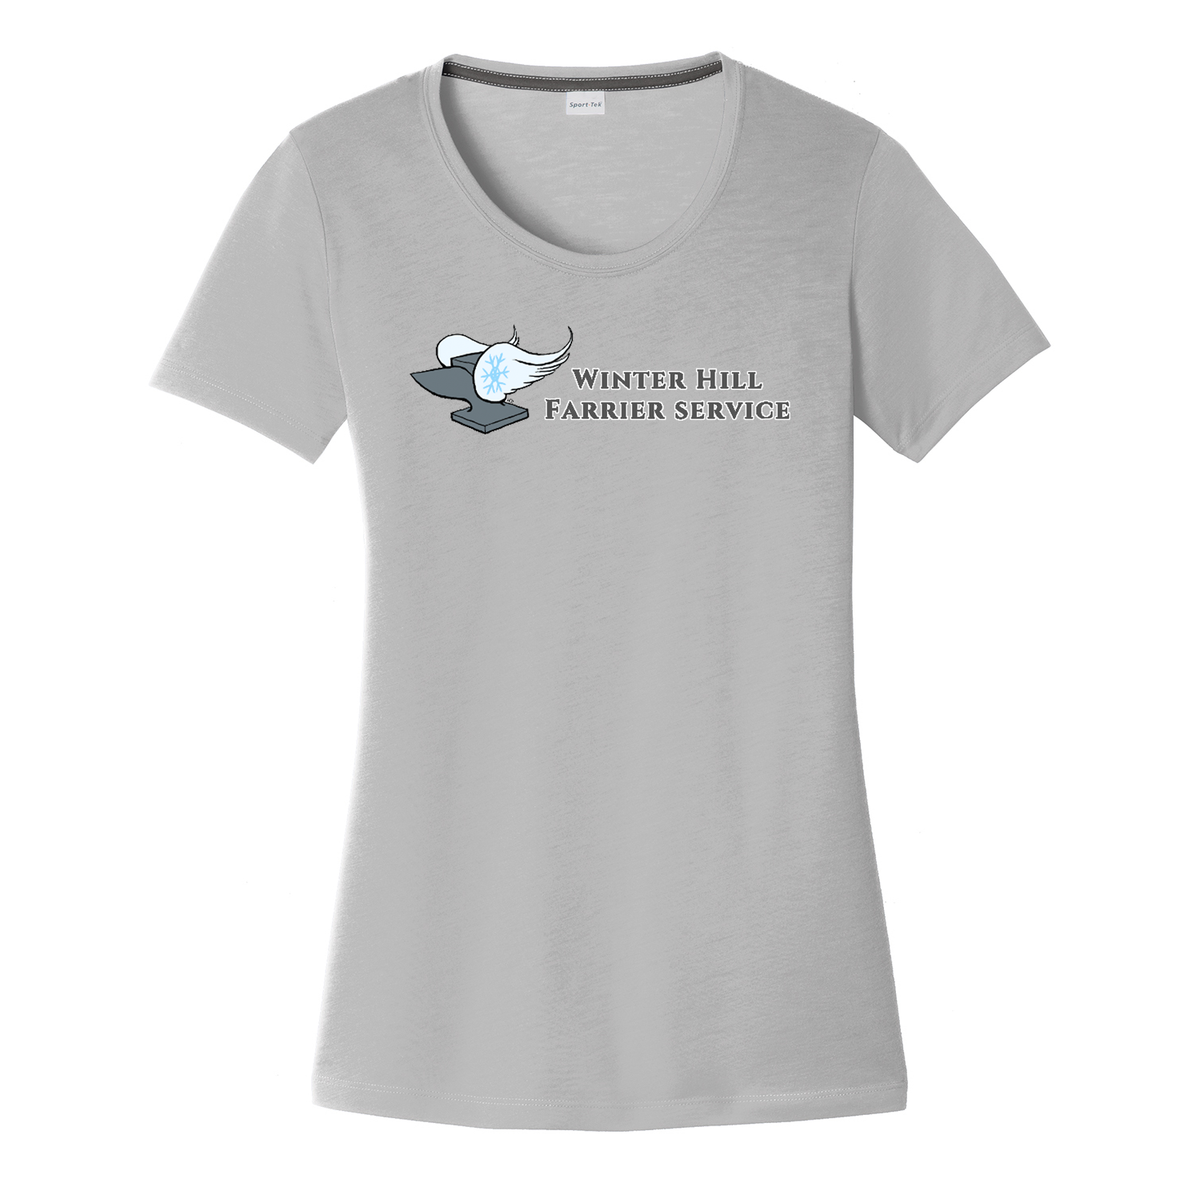 Winterhill Farm Women's CottonTouch Performance T-Shirt